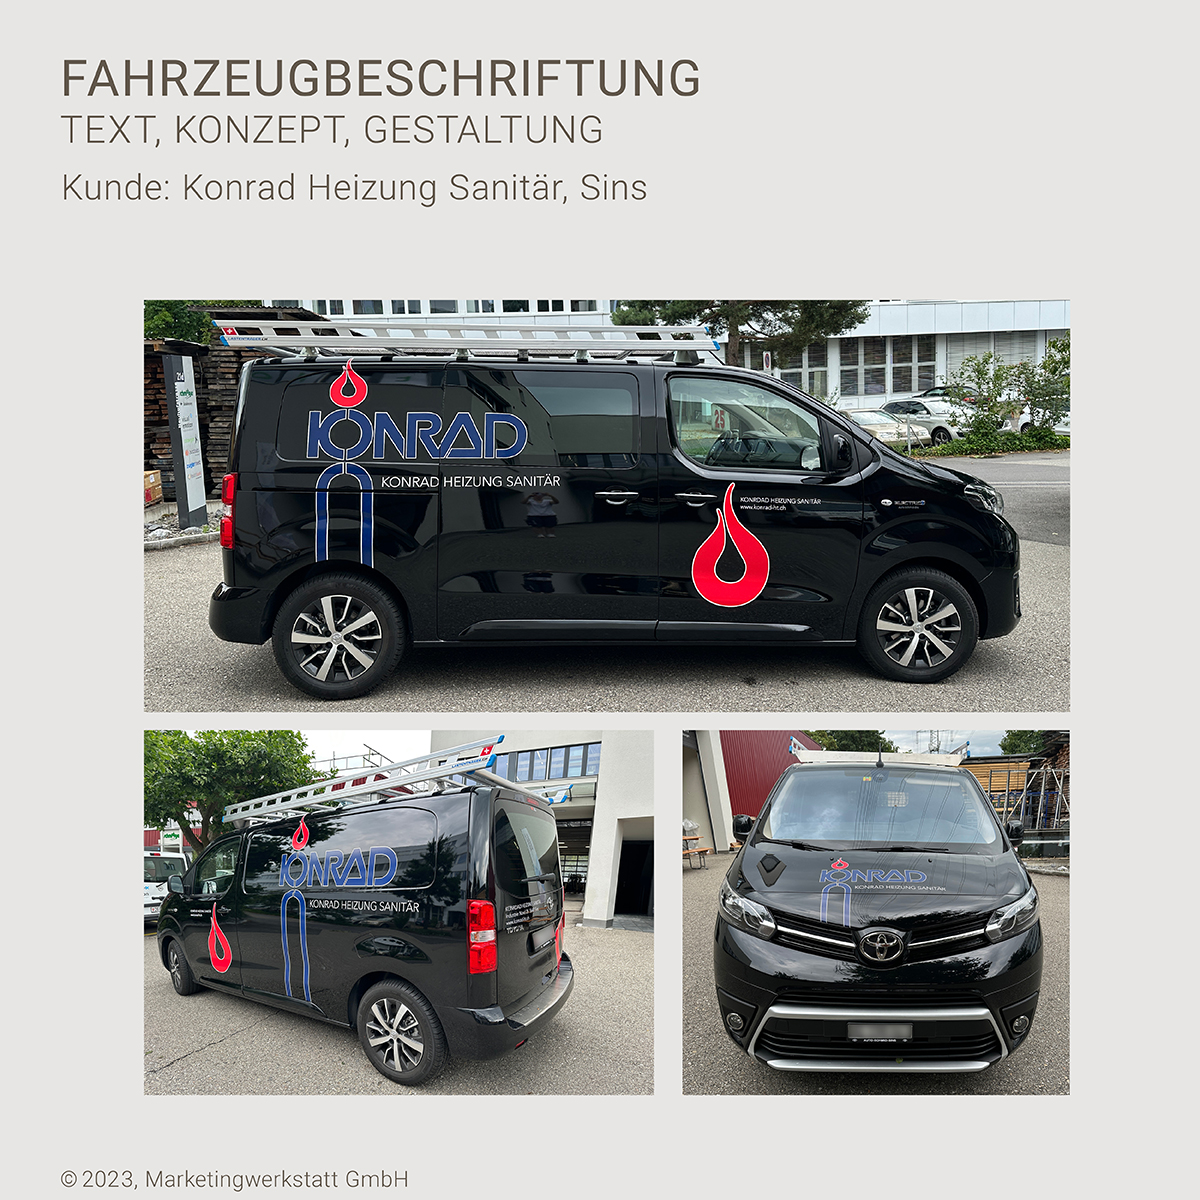 WEB1_MW_Projekt_Konrad-Heizung-Sanitaer-Fahrzeugbeschriftung_07-2023